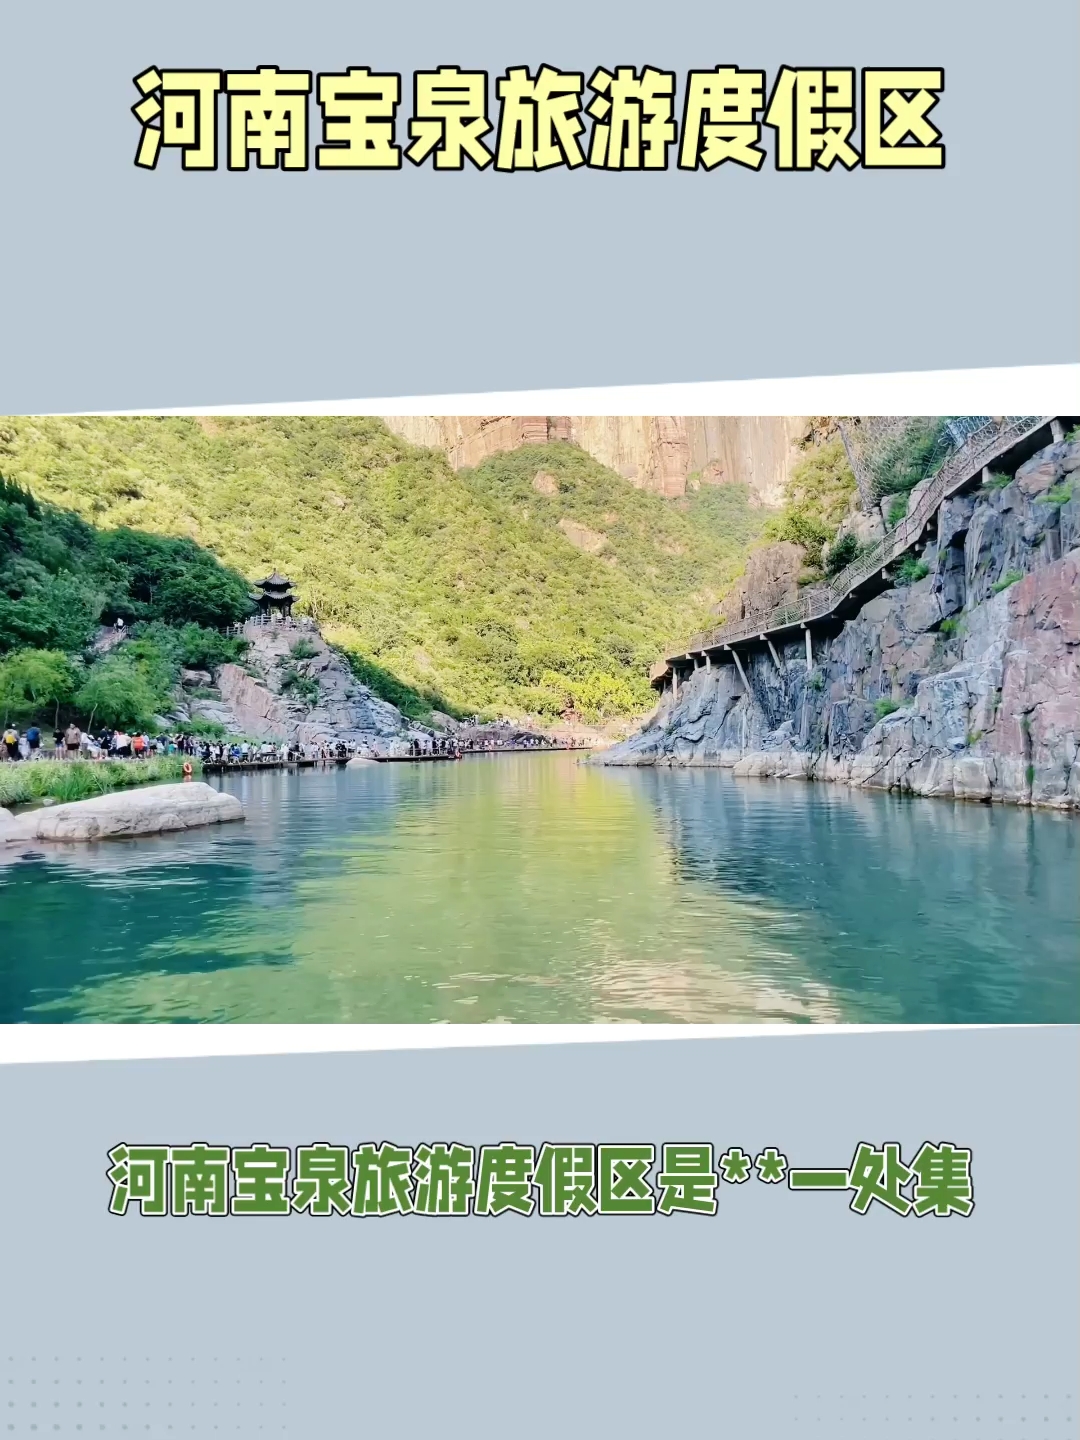 河南宝泉旅游度假区是**一处集自然风光、历史文化和宗教信仰